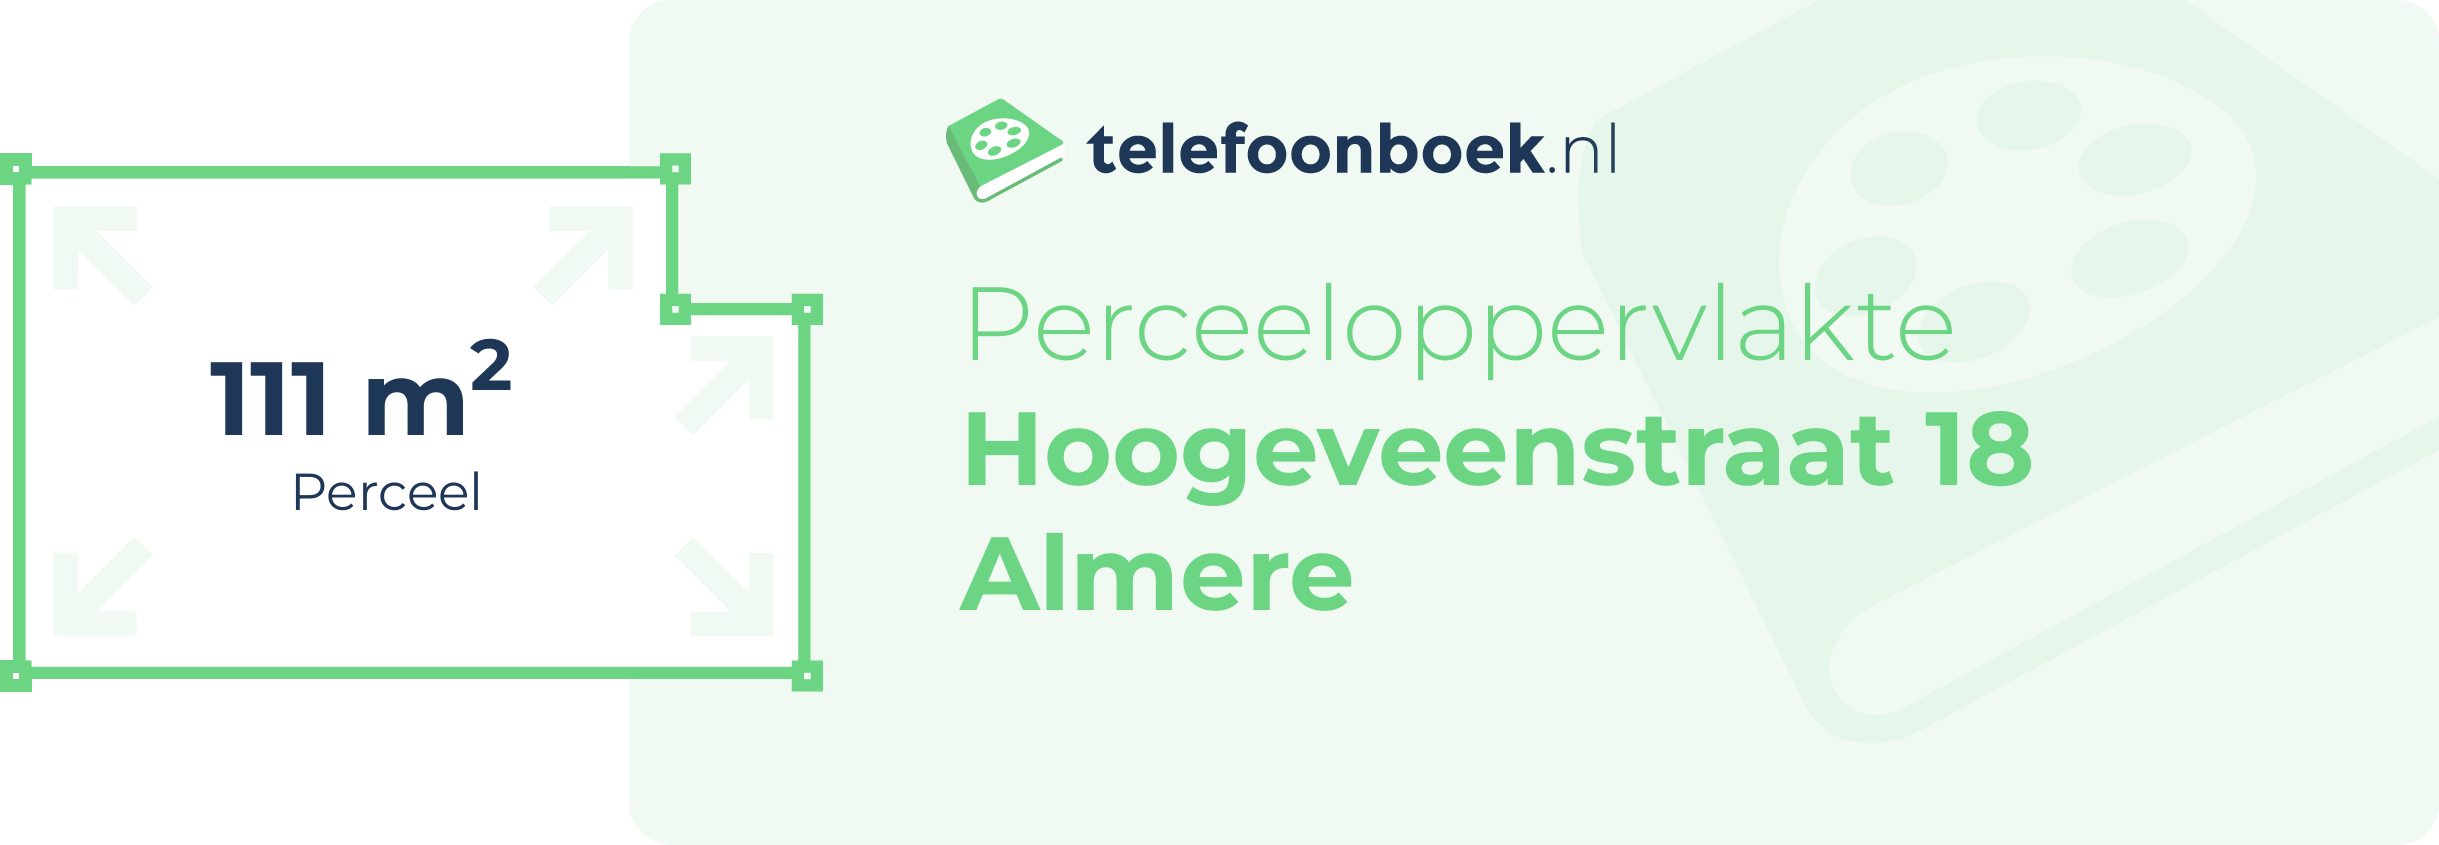 Perceeloppervlakte Hoogeveenstraat 18 Almere